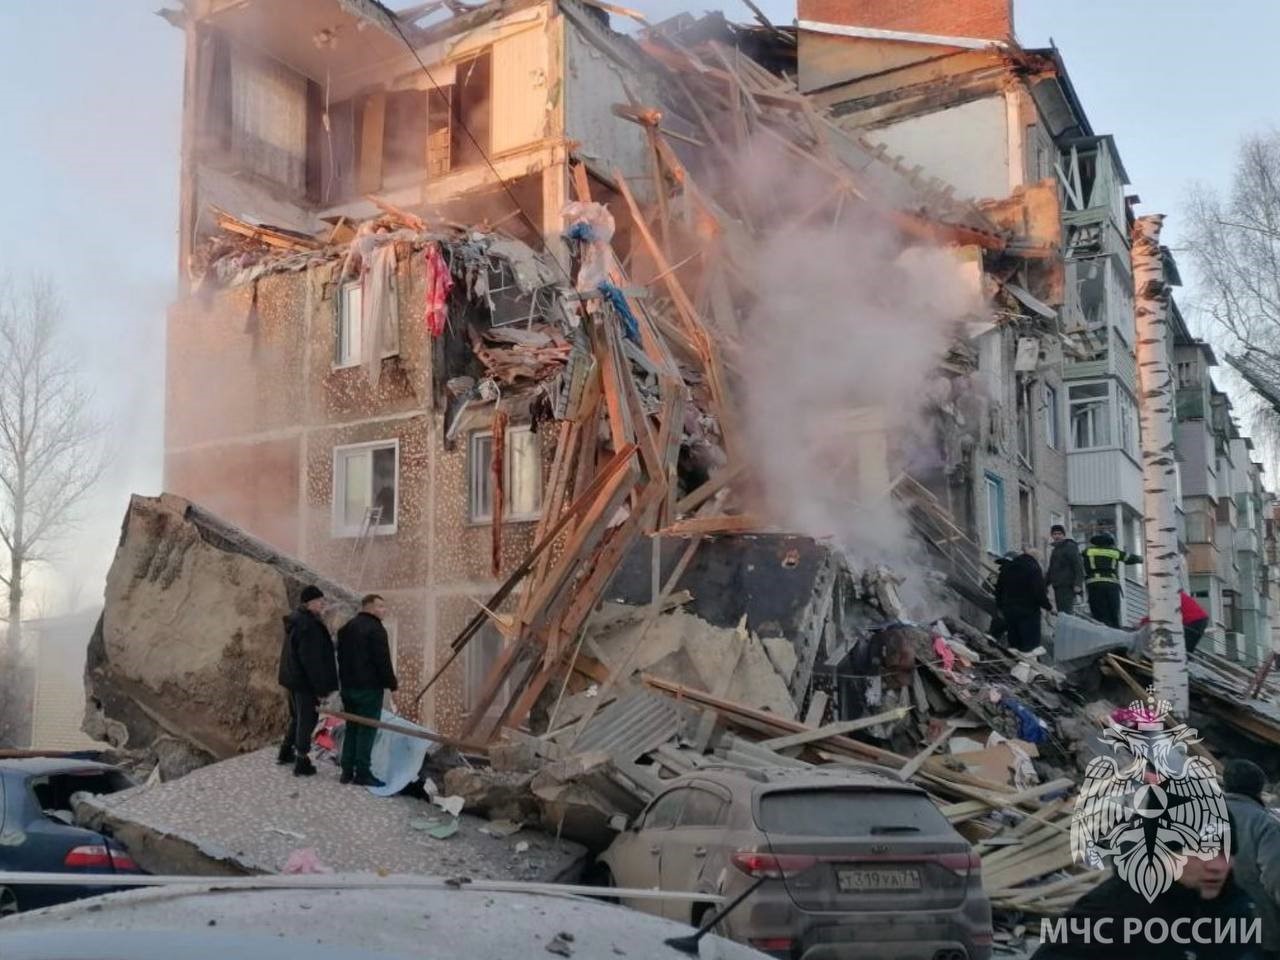 Rusya’da apartmanda doğal gaz patlaması: 4 ölü